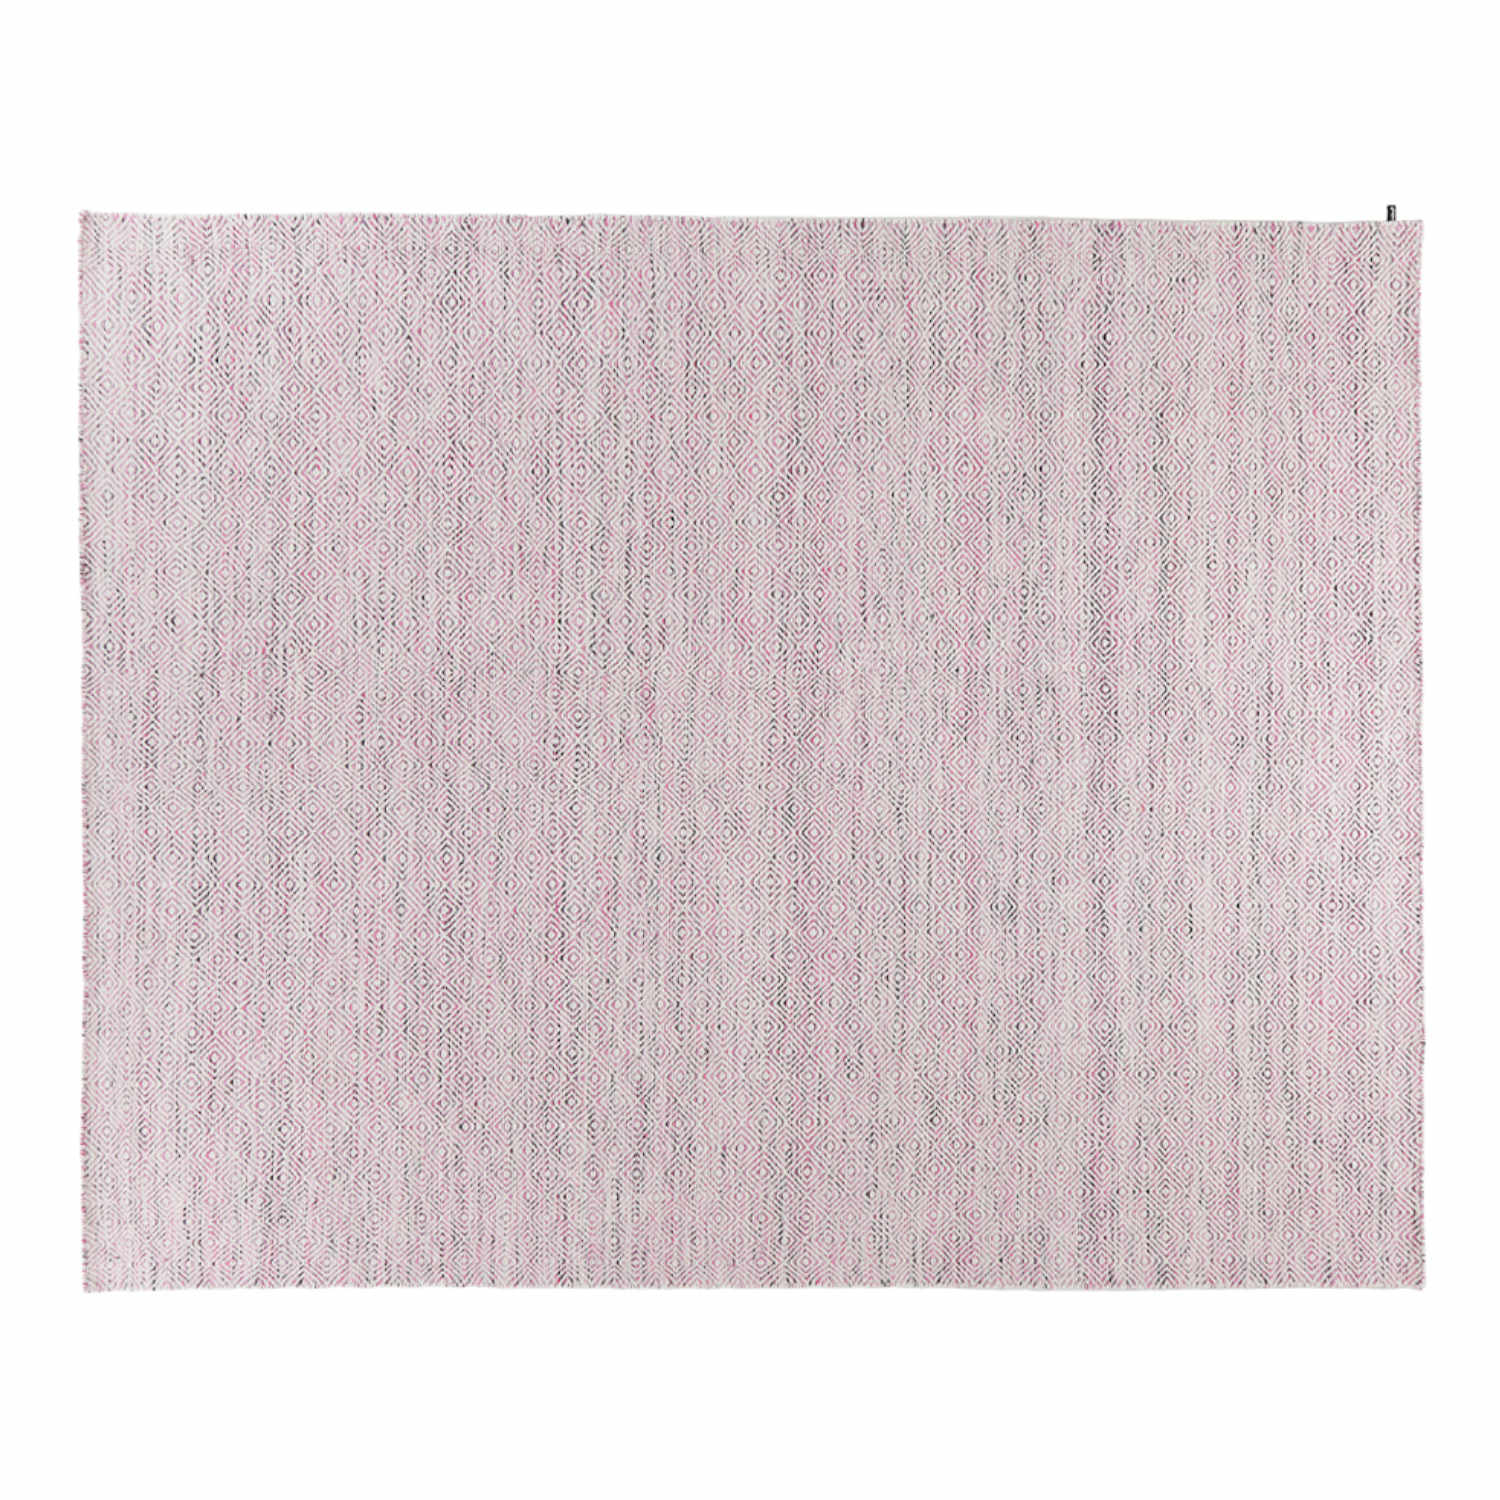 NeWave Vol. II Teppich, Grösse 200 x 300 cm, Farbe multi pink von miinu